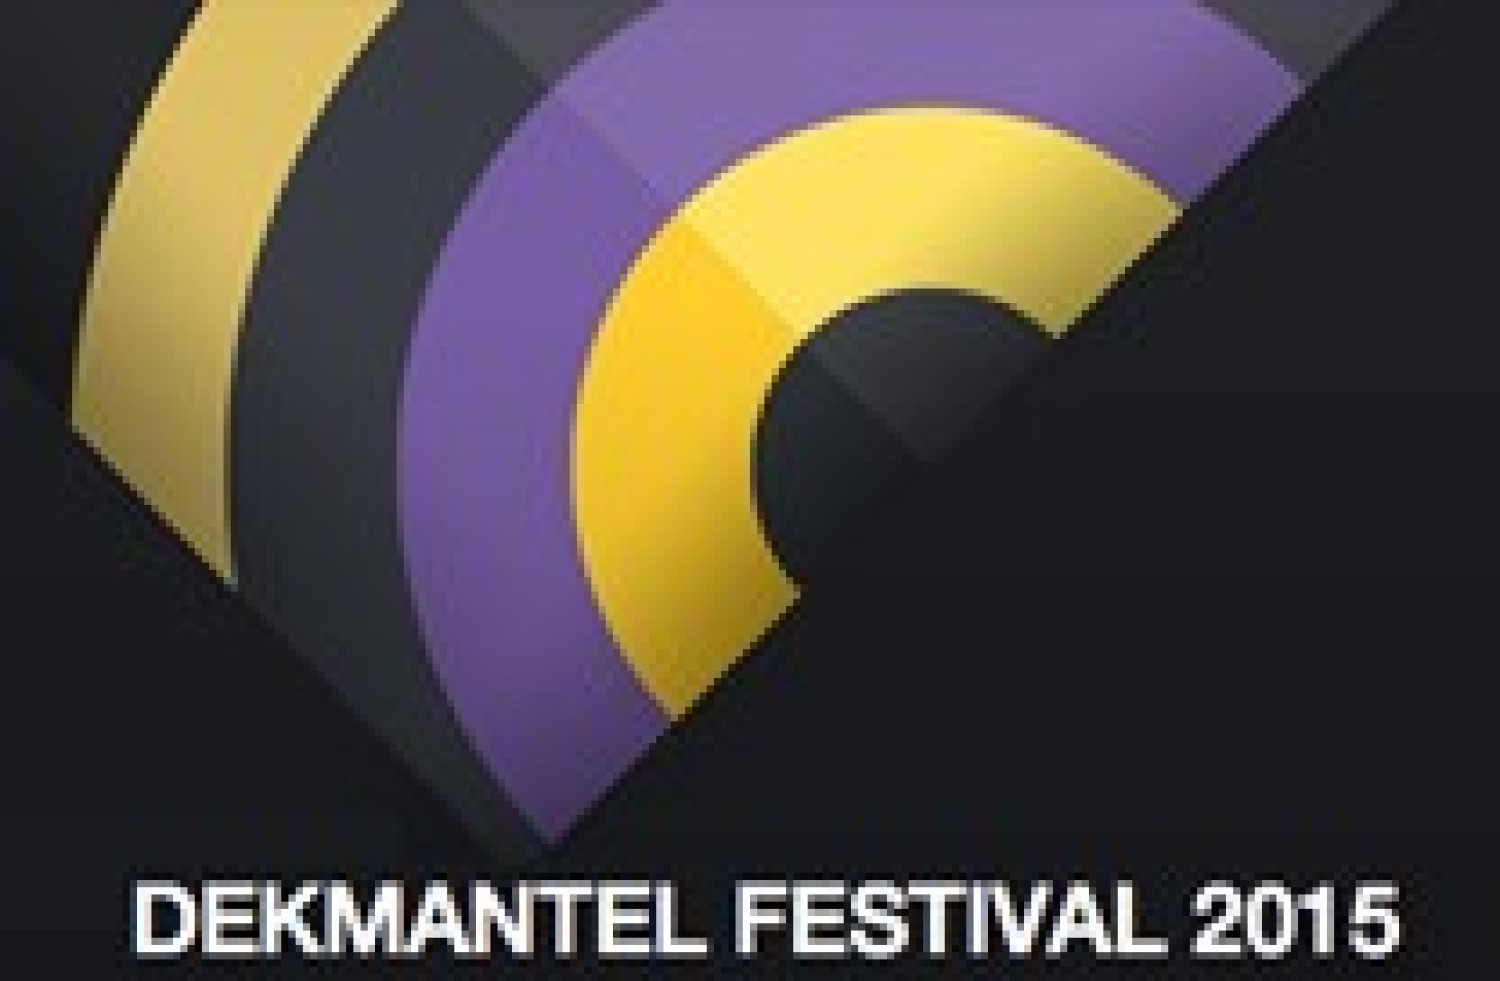 Party nieuws: Dekmantel maakt programma bekend voor Festival 2015